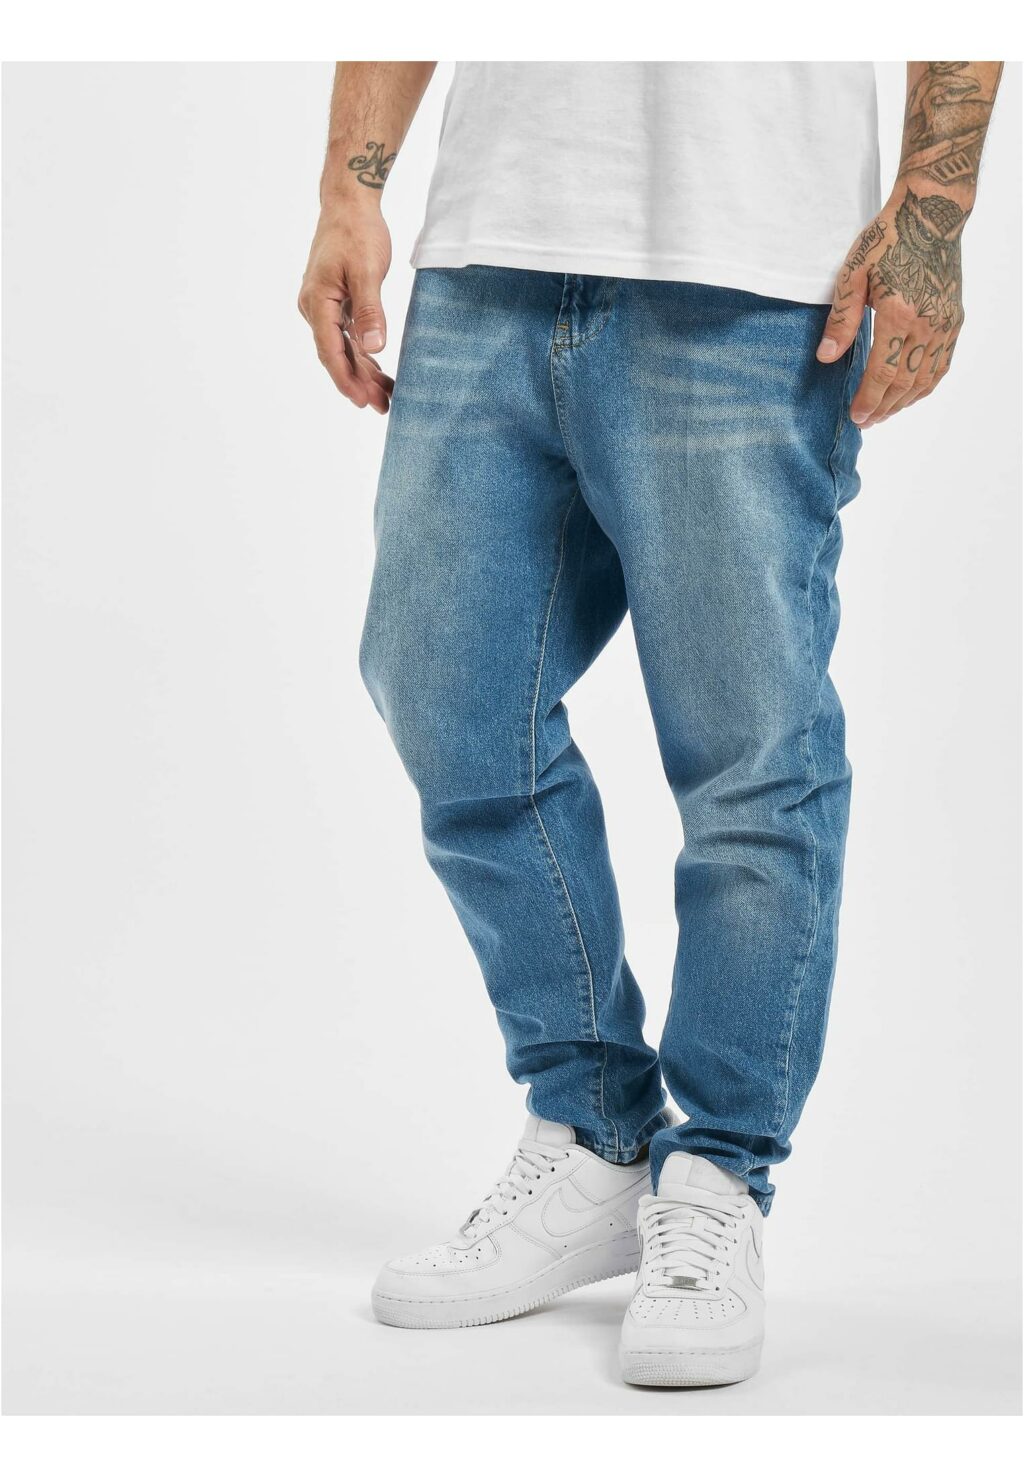 Loose Fit Jeans Roger blue DFJS182